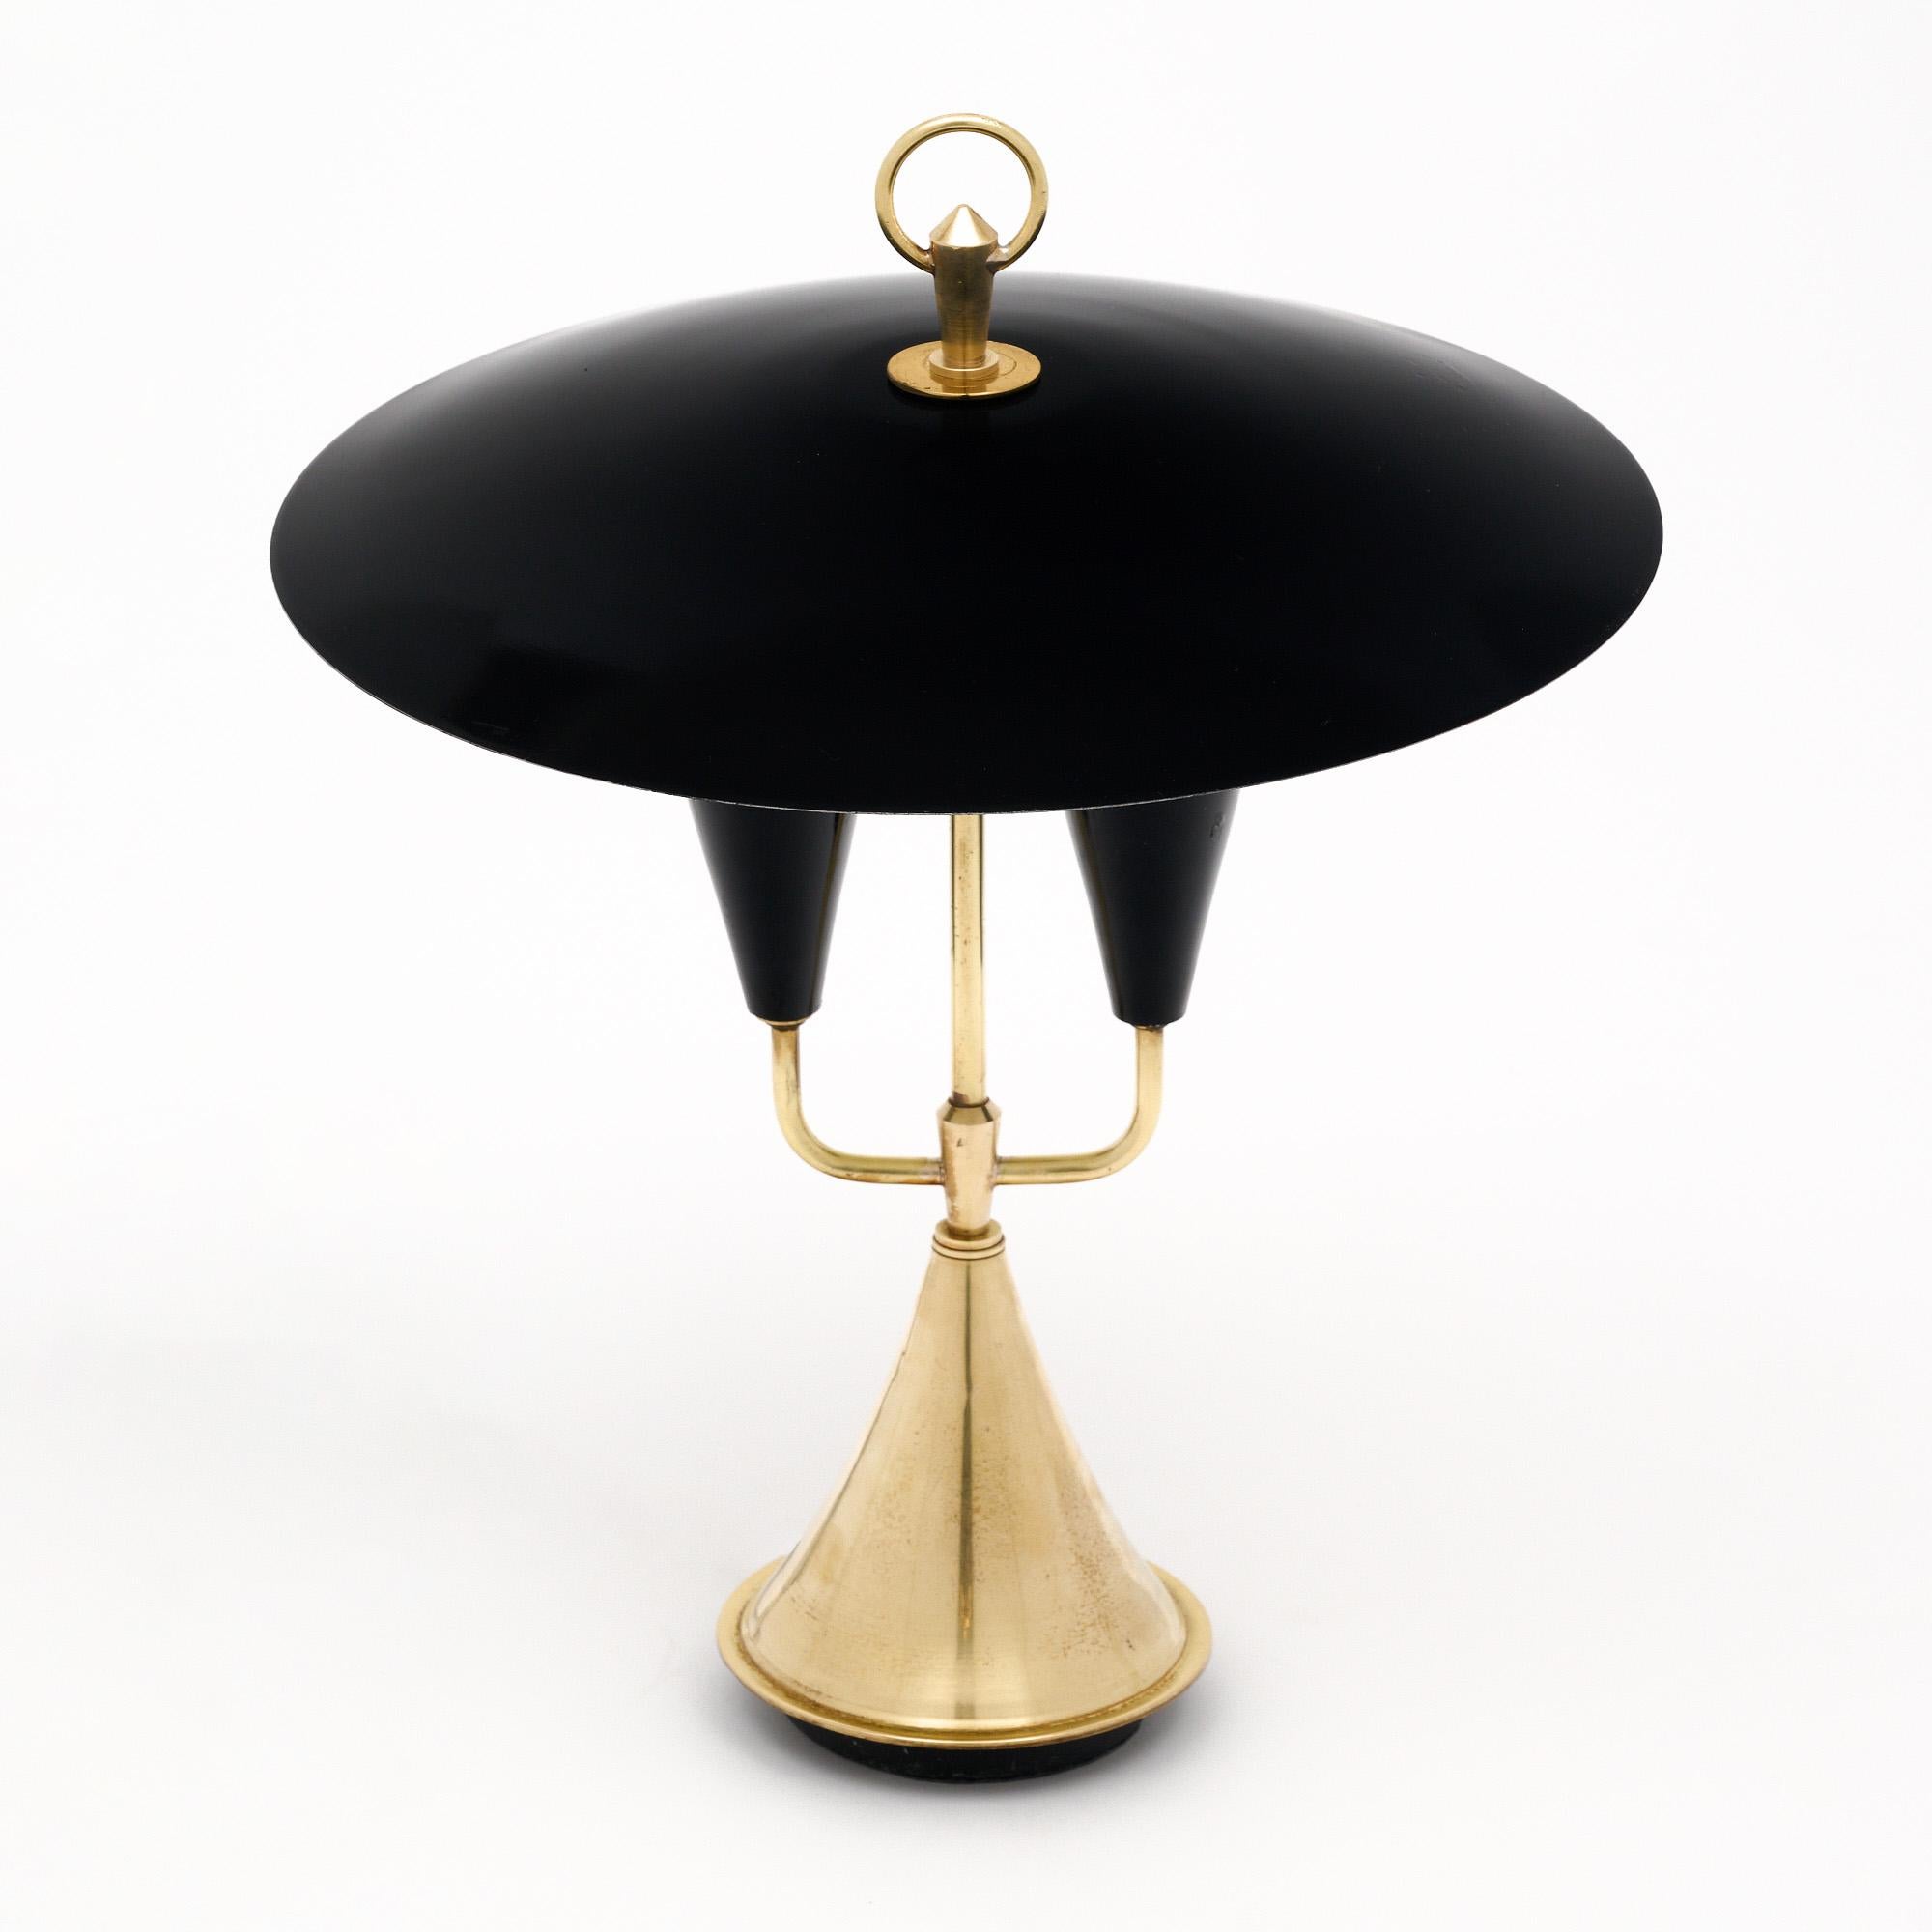 Italian Mid-Century Stilnovo Style Table Lamp